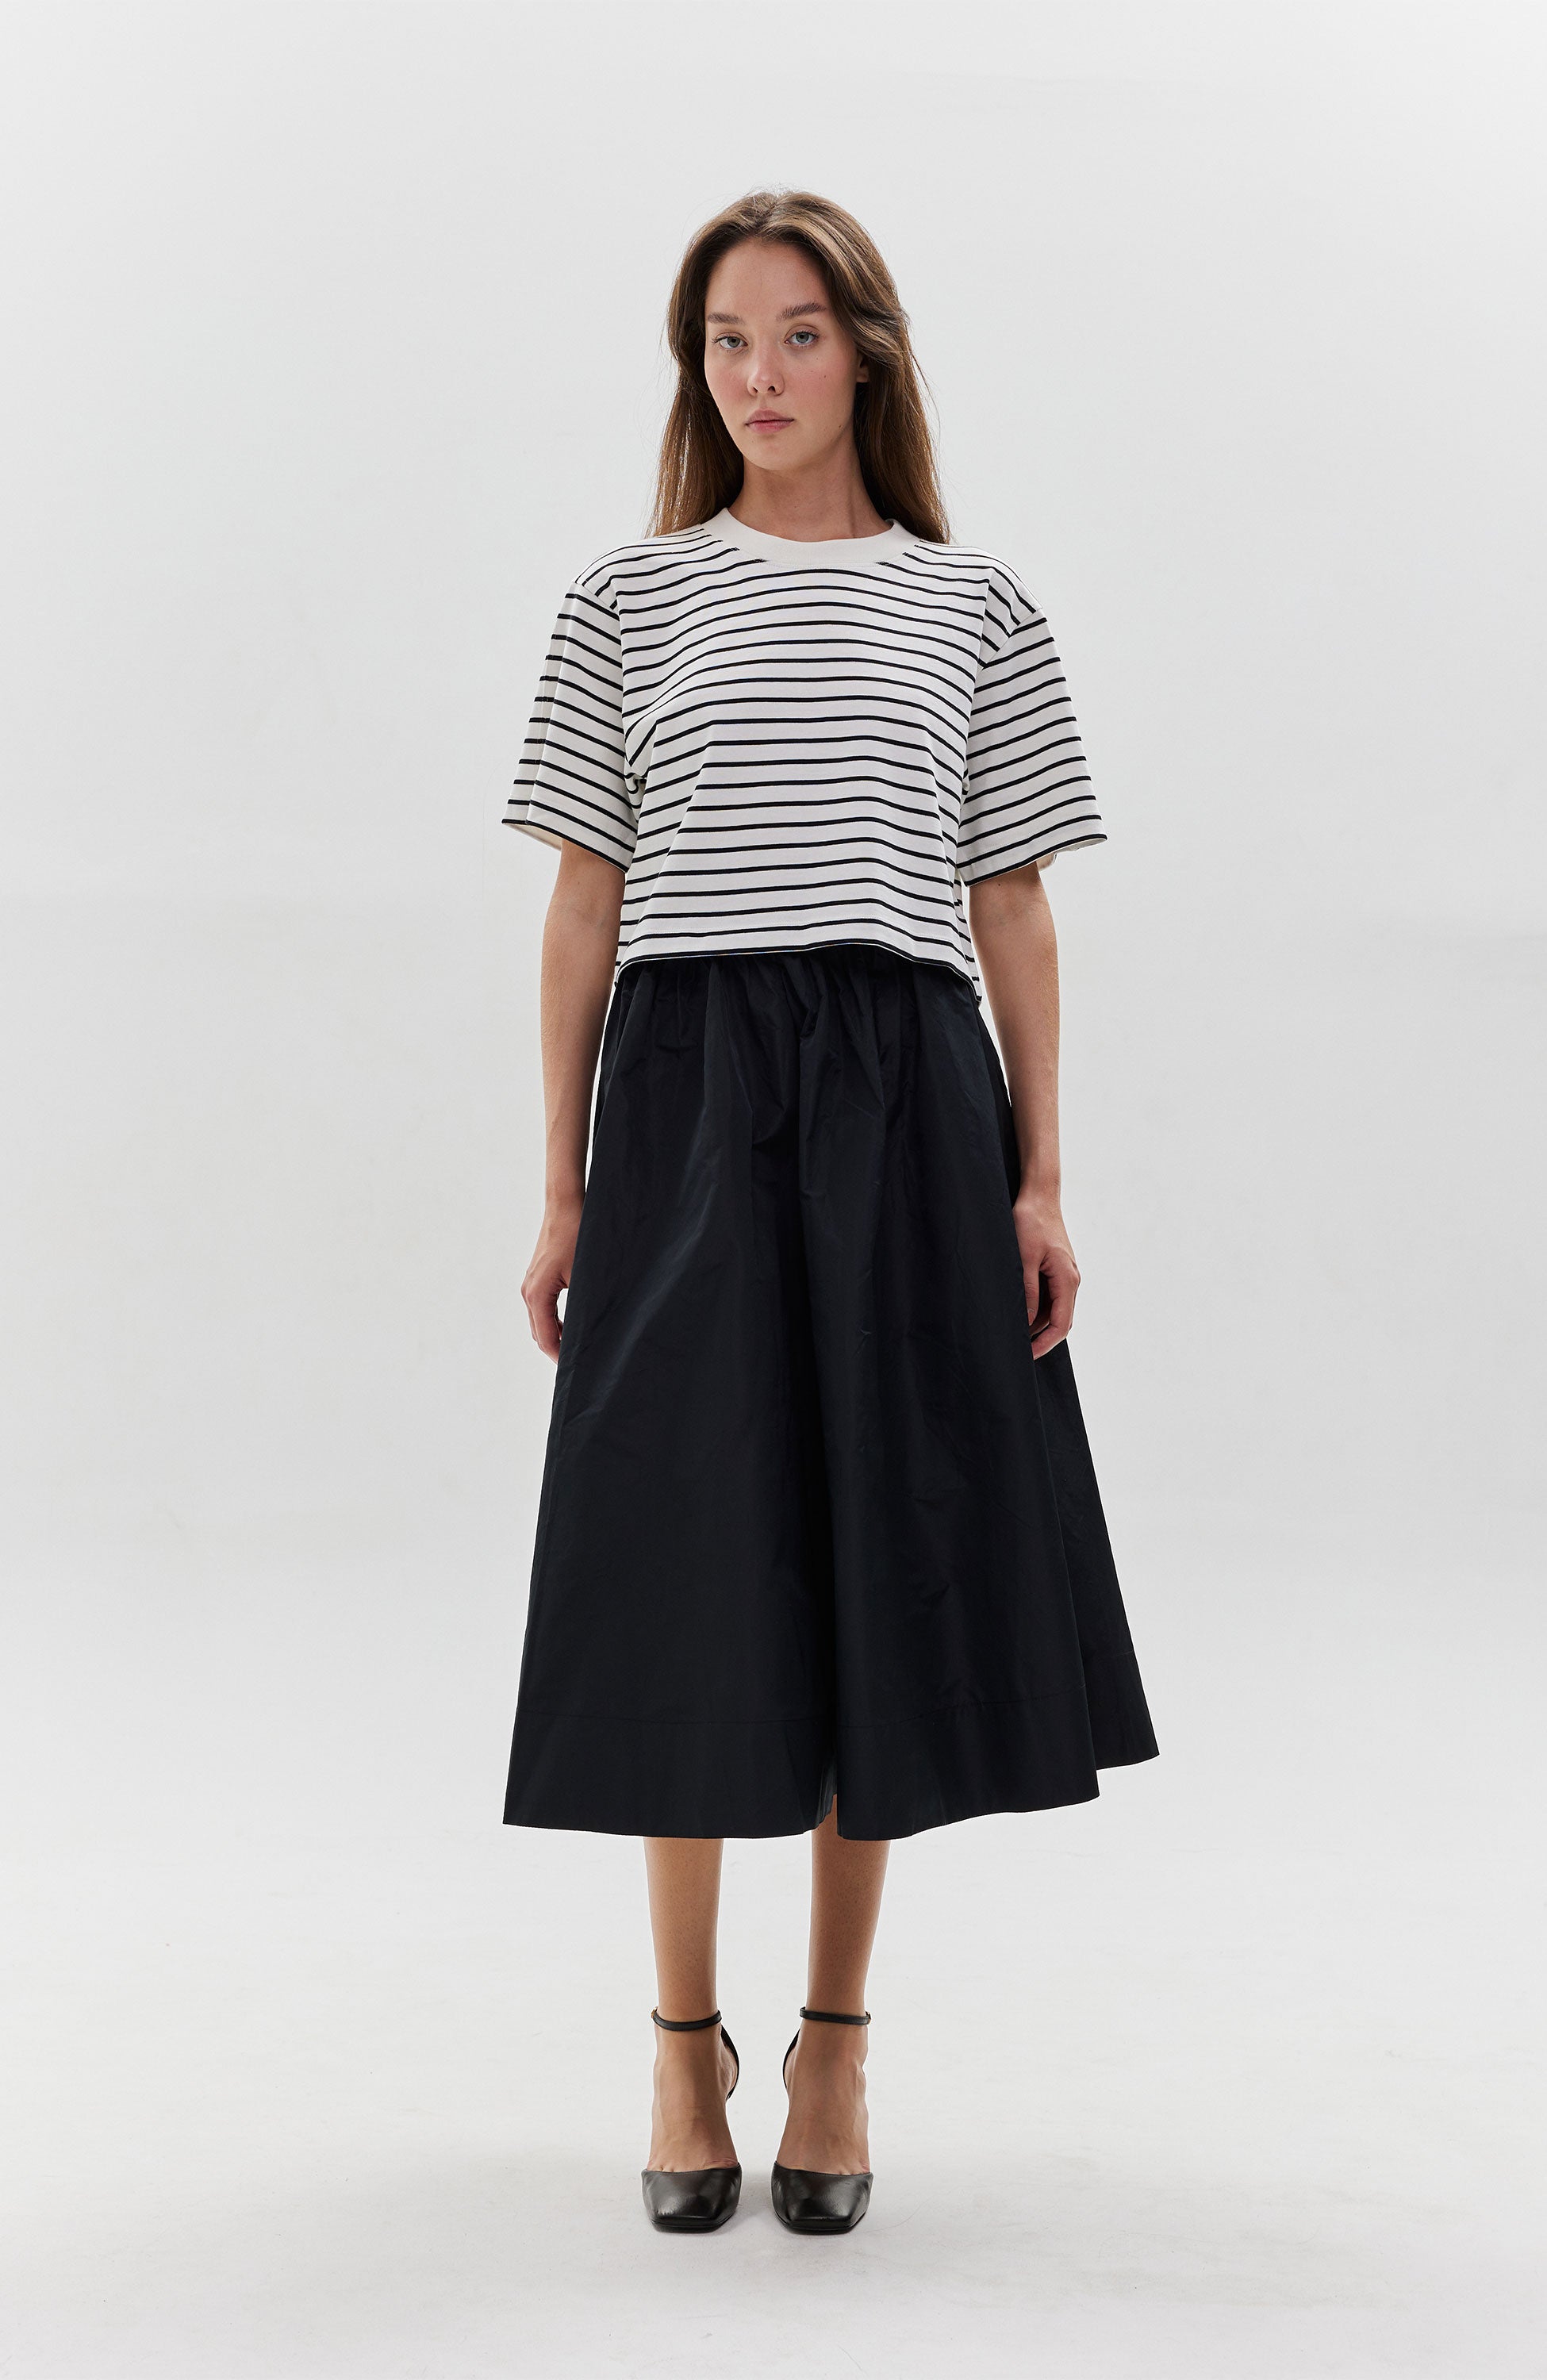 A-lined silk skirt